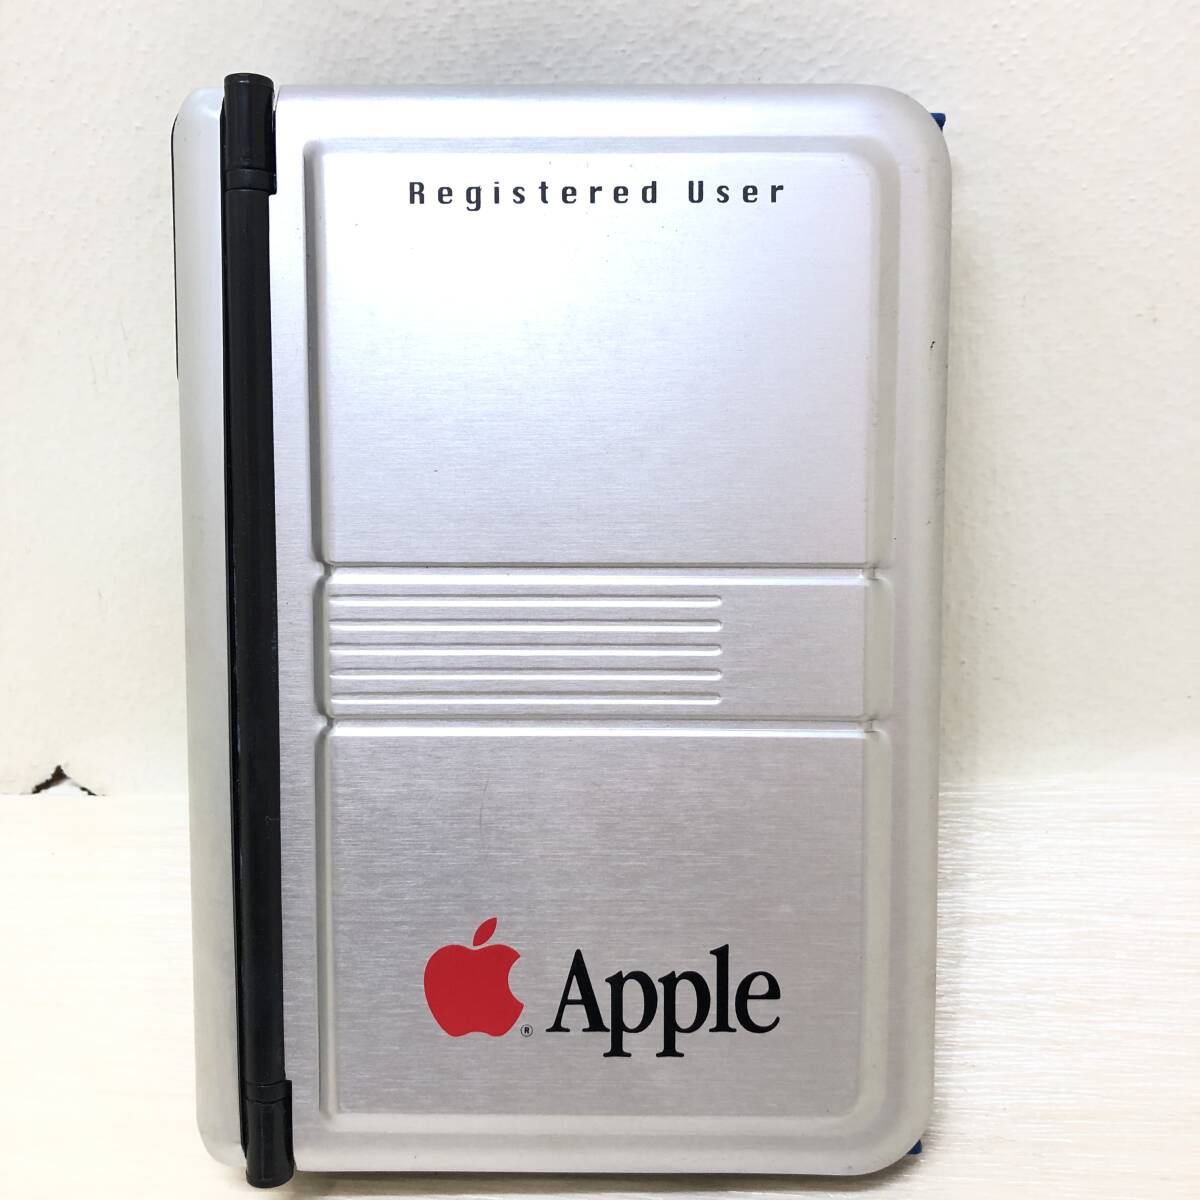 △Apple アップル オリジナルシステム手帳 6穴 1996年 ノベルティグッズ 当時物 コレクション 中古品△C73328の画像1